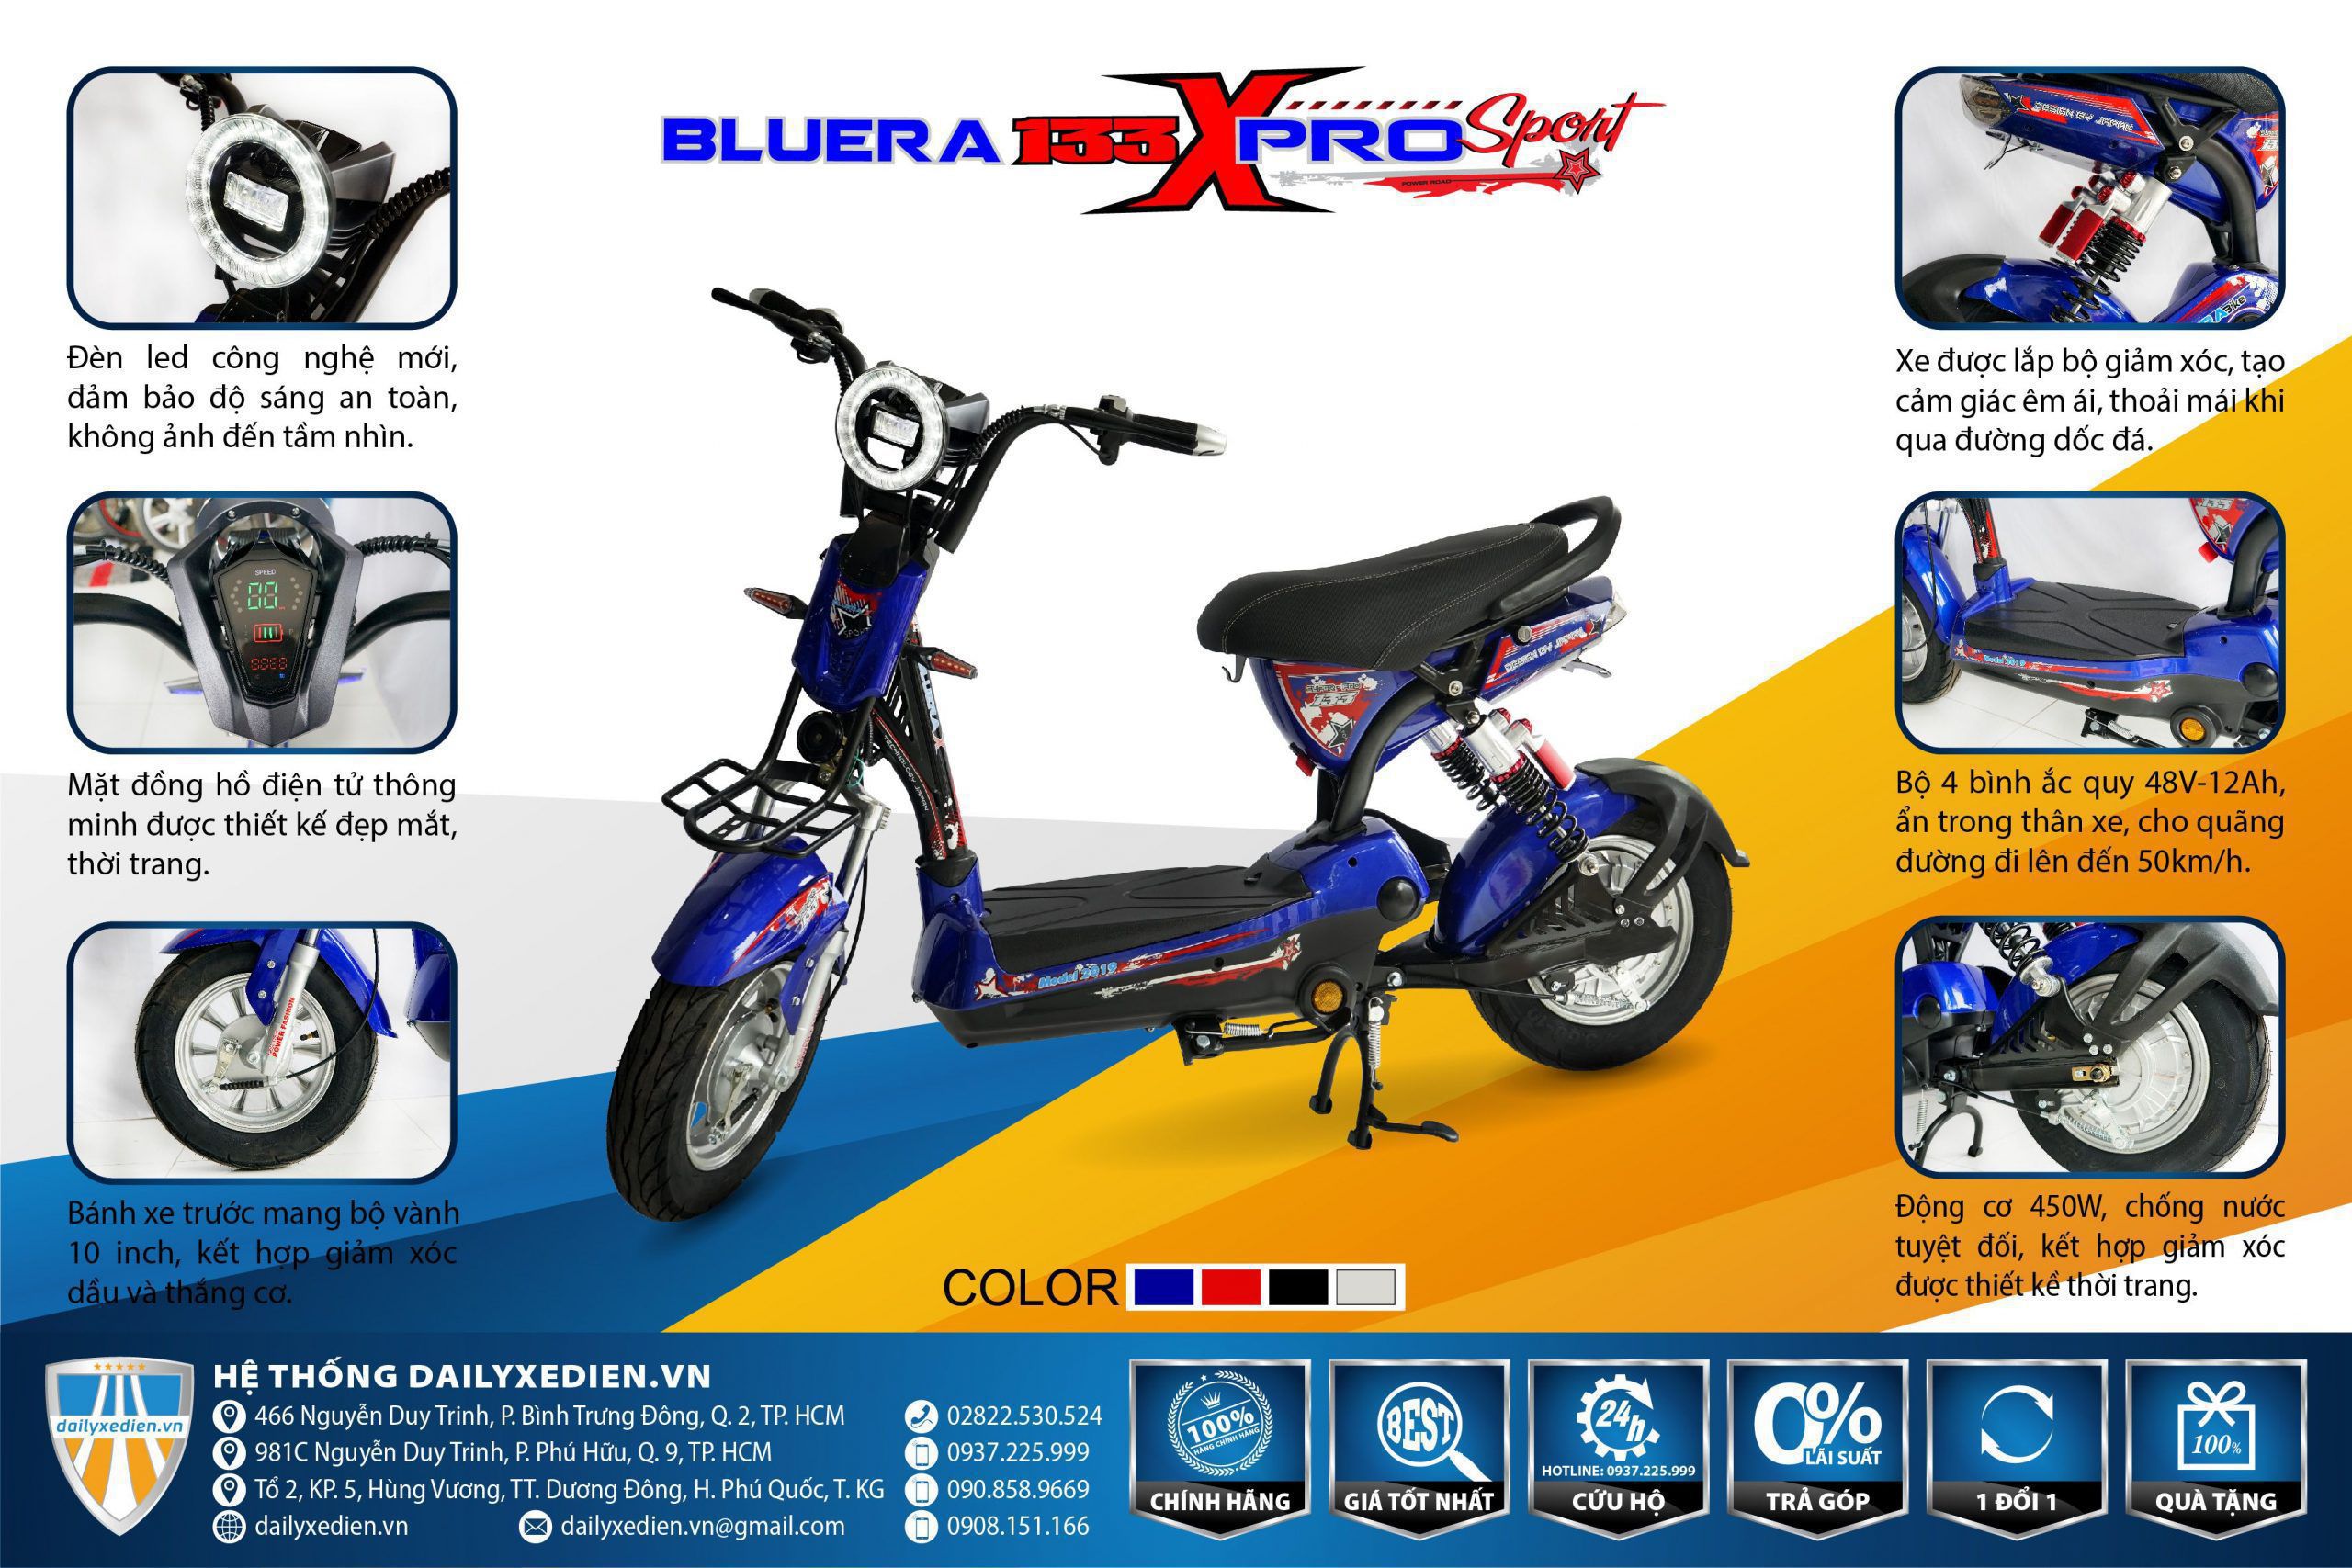 XE DAP DIEN BLUERA 133 X PRO SPORT TT 01 scaled - Xe đạp điện Bluera 133 Sport